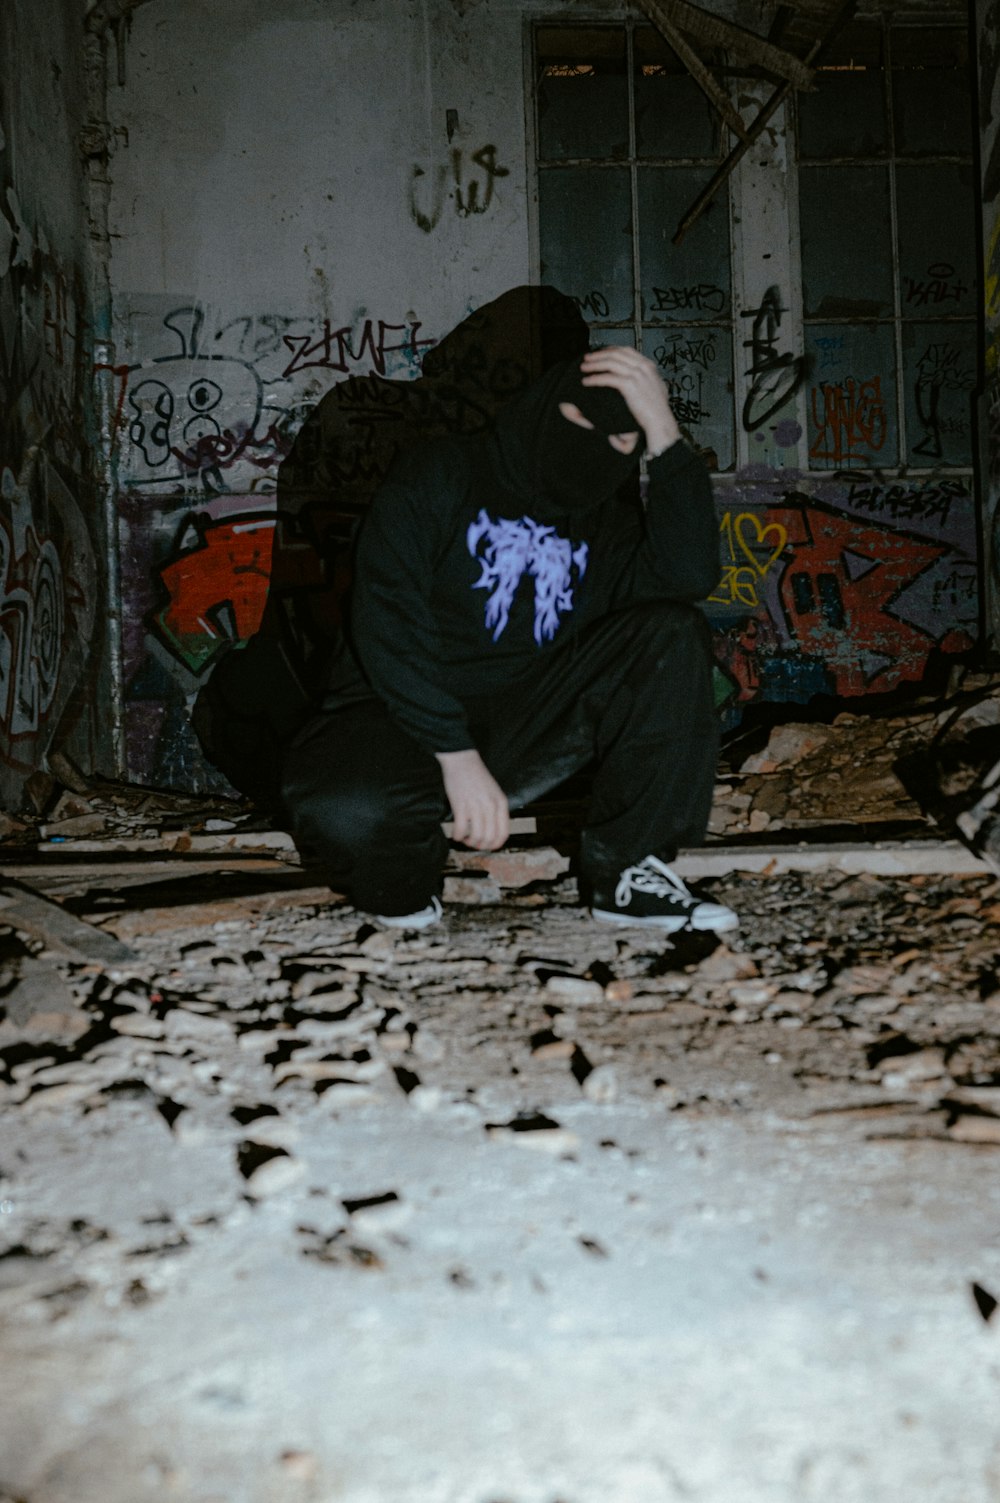 una persona arrodillada en una habitación con grafitis en las paredes